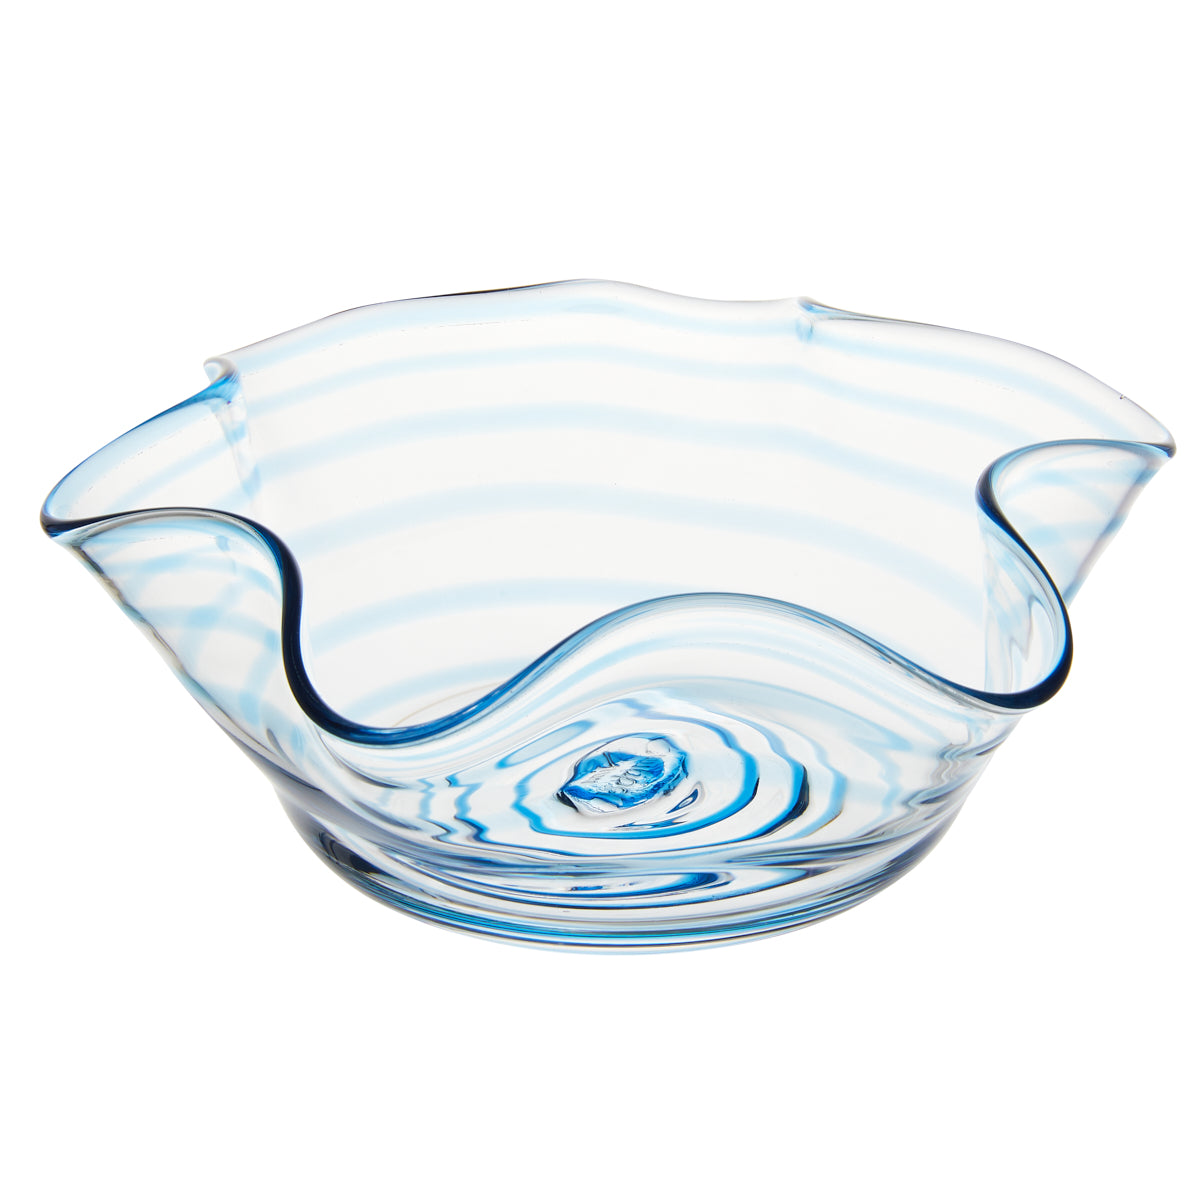 Nina Campbell Swirl Bonbon Bowl  - Aqua